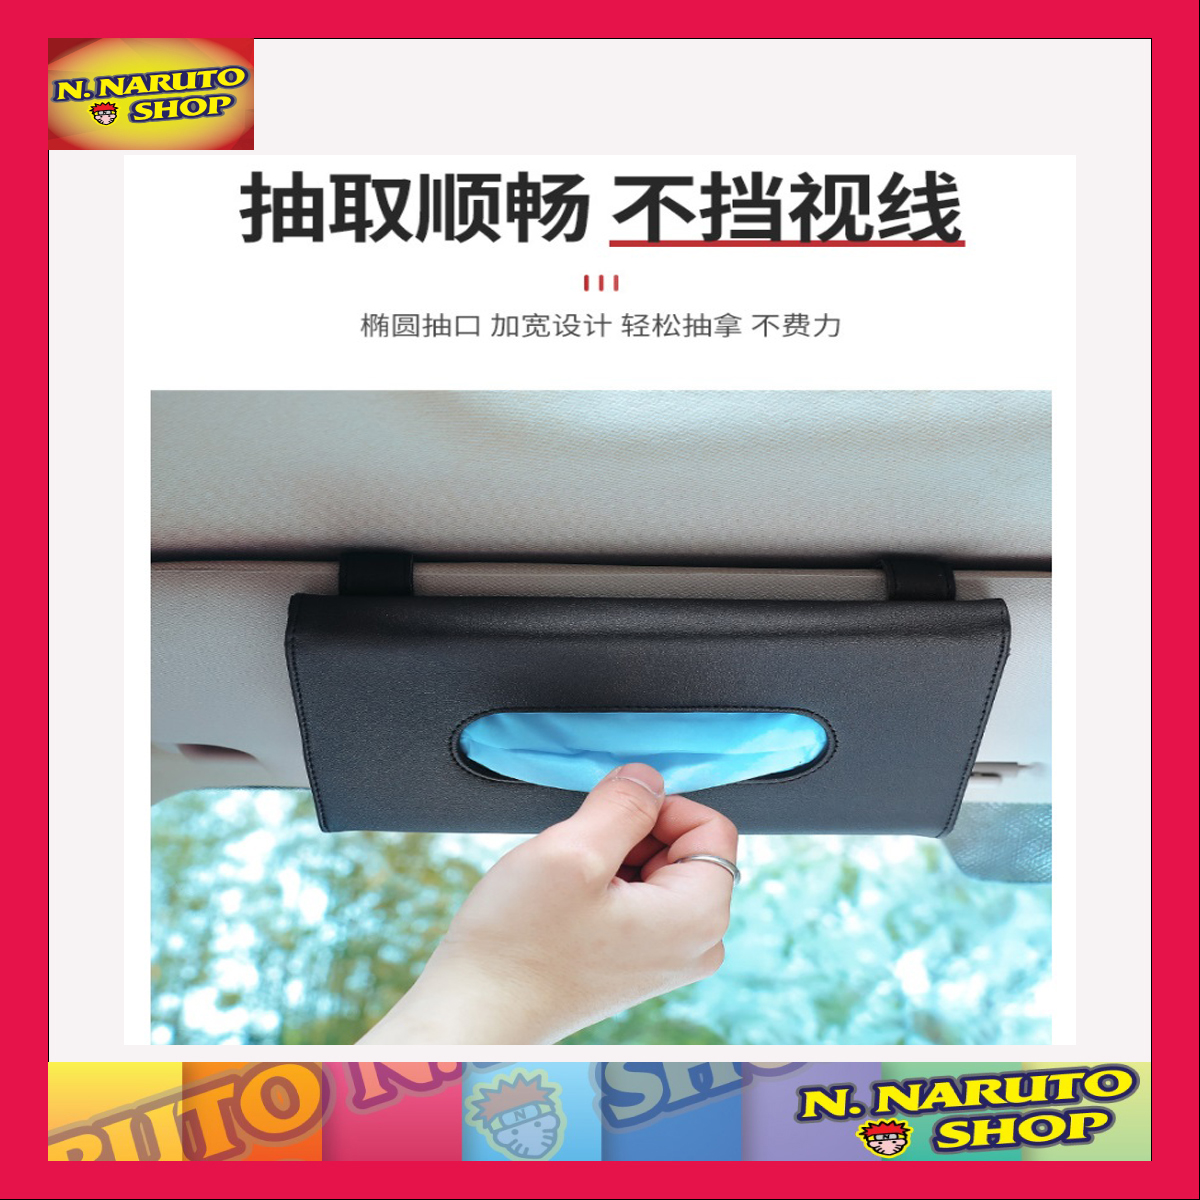 PU Leather Case Napkin Holder ที่ใส่ทิชชู่ ที่ใส่ทิชชูในรถ ที่ใส่แมสในรถ ที่ใส่ทิชชูรถ ที่ใส่ทิชชู  ที่ใส่ทิชชูในรถ ที่ใส่ทิชชูกระดาษทิชชู สีดำ T0066